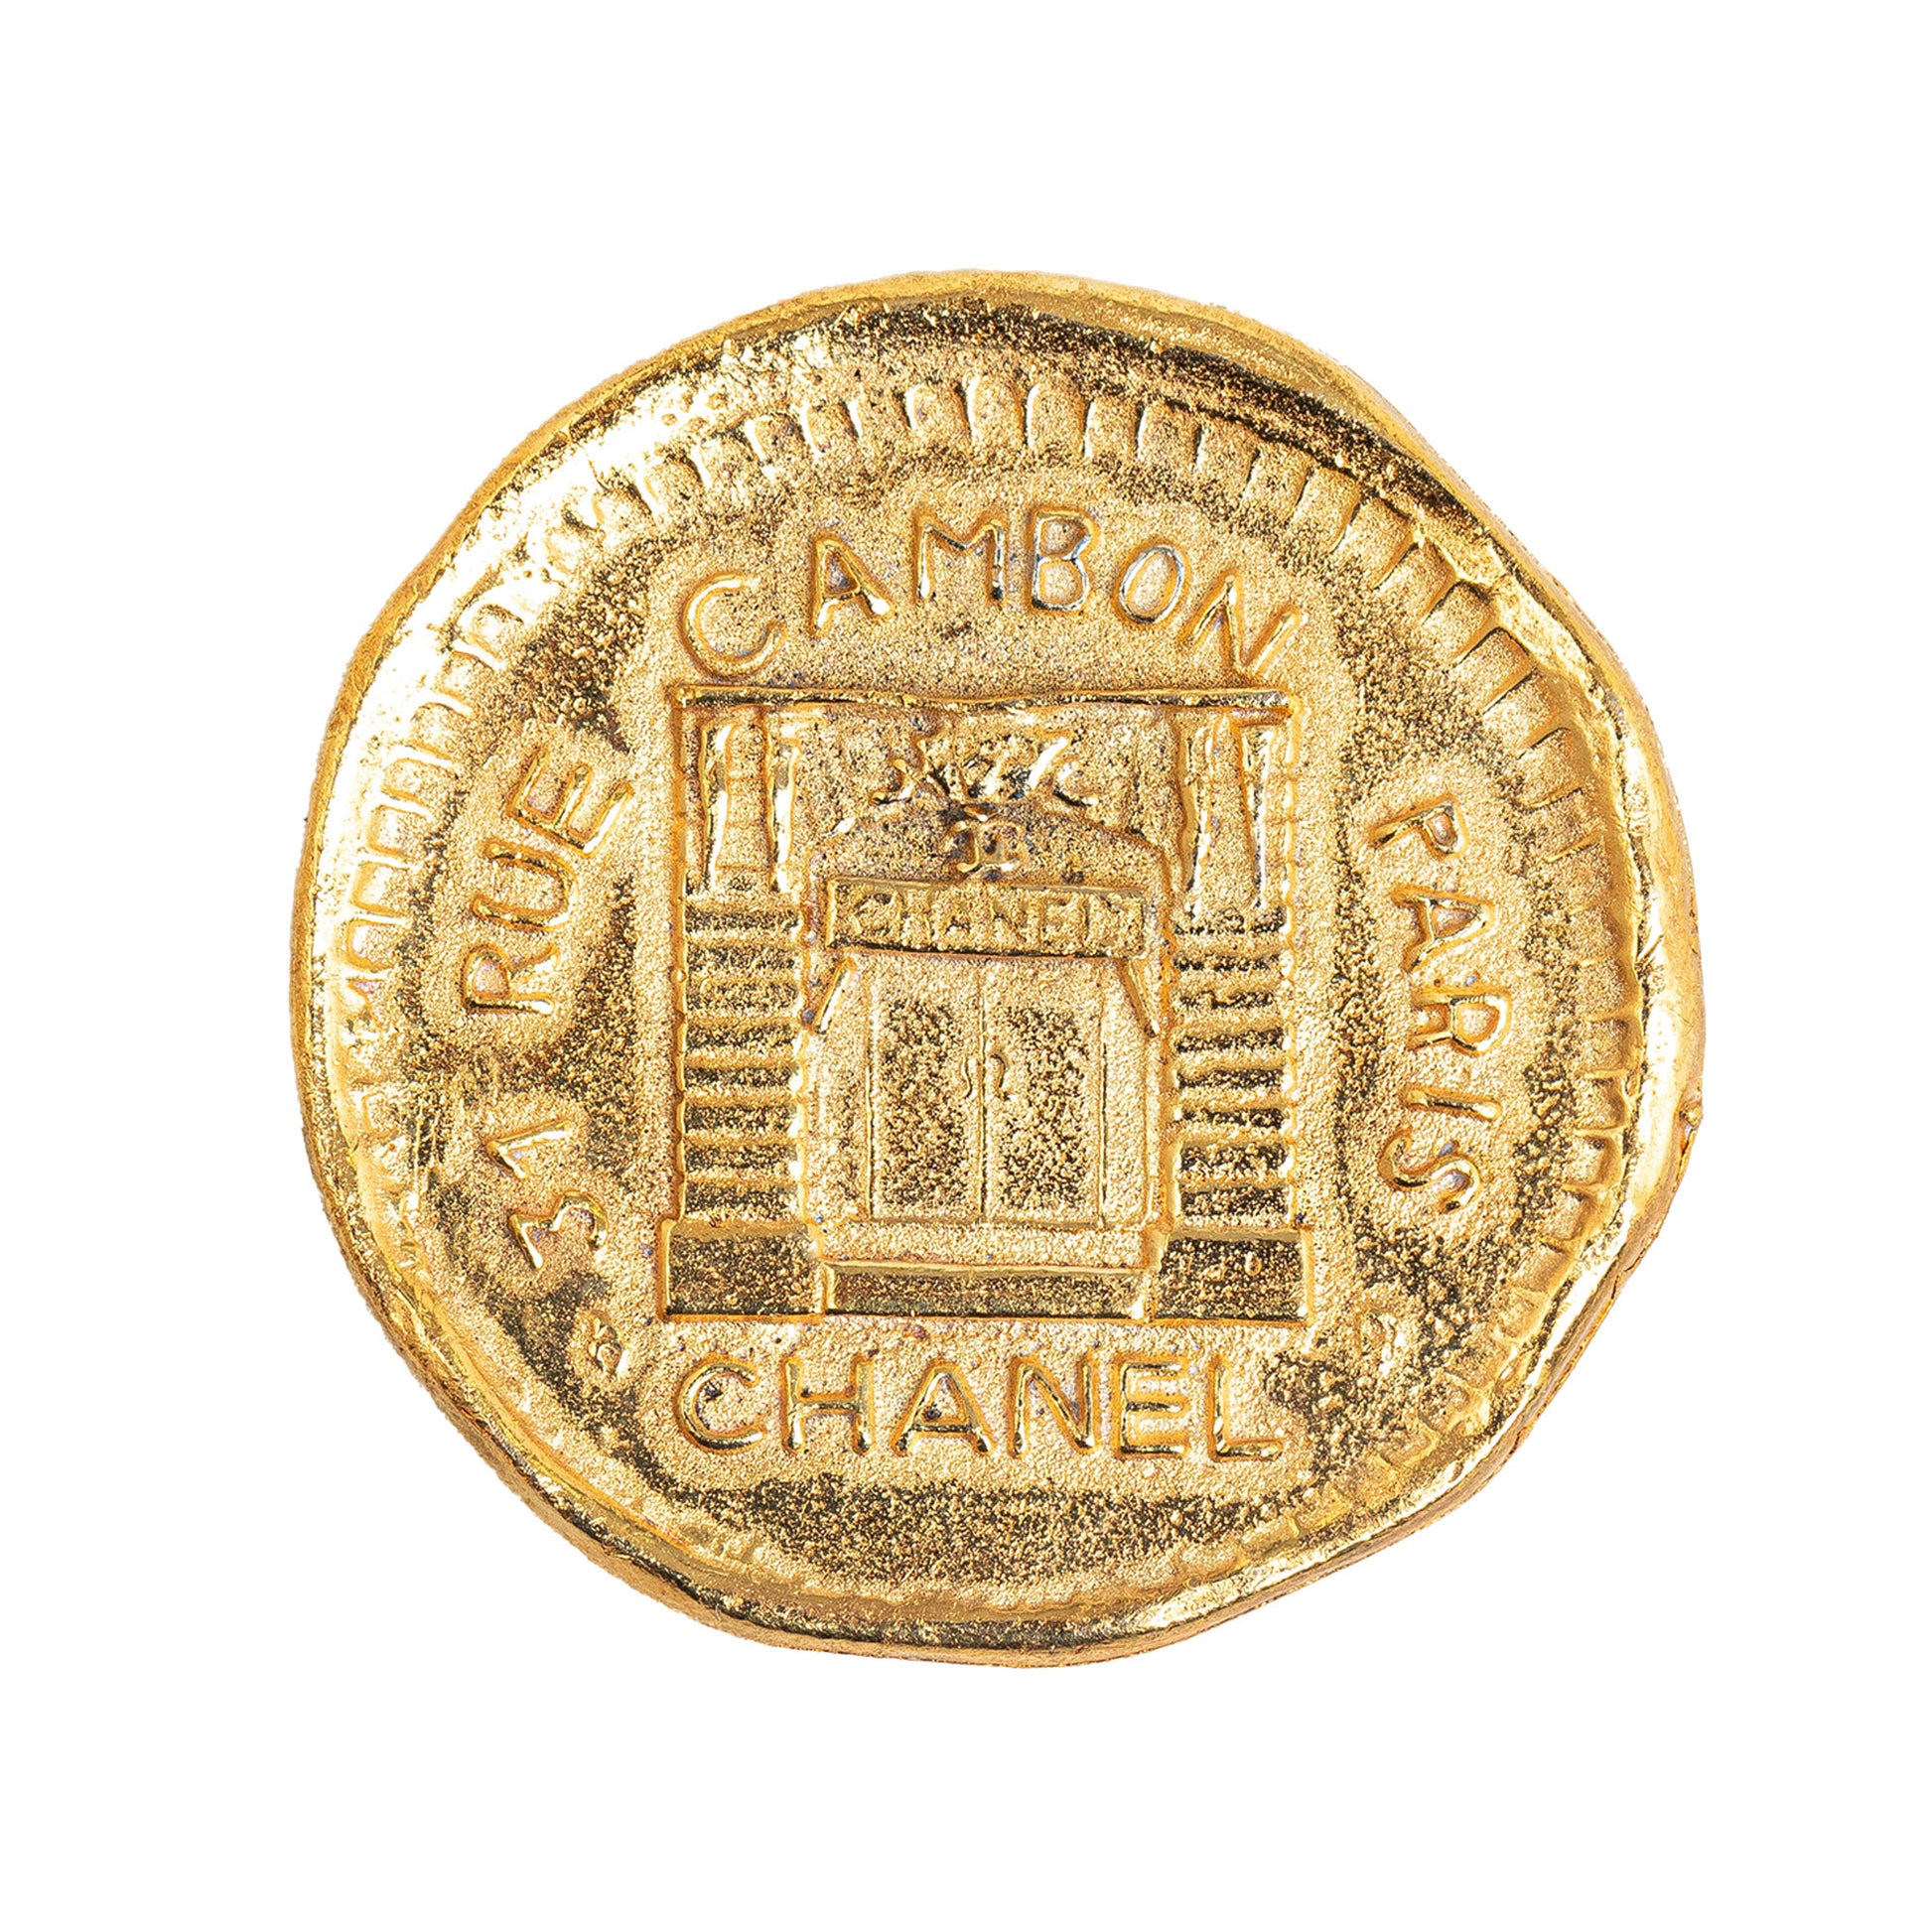 31 Rue Cambon Hammered Medallion Brooch Gold - Gaby Paris